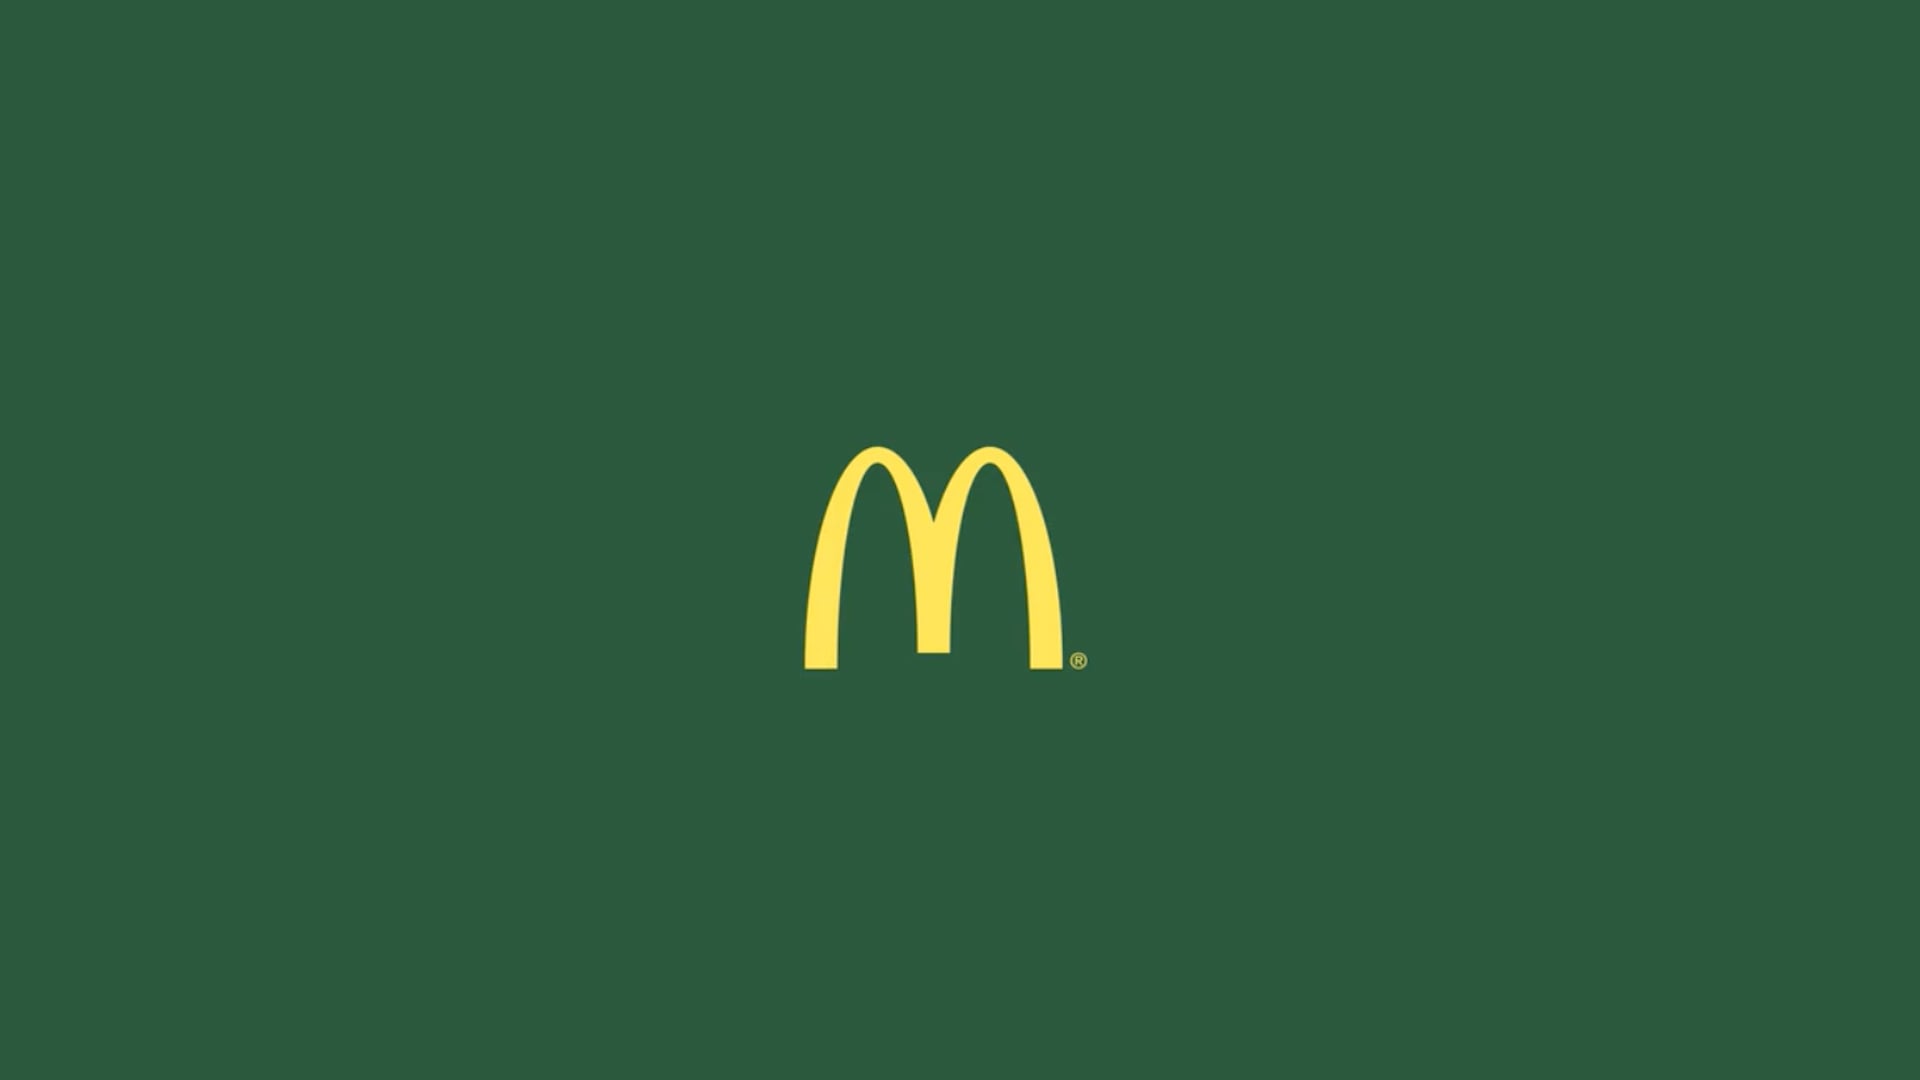 McDonald's | True Good Things